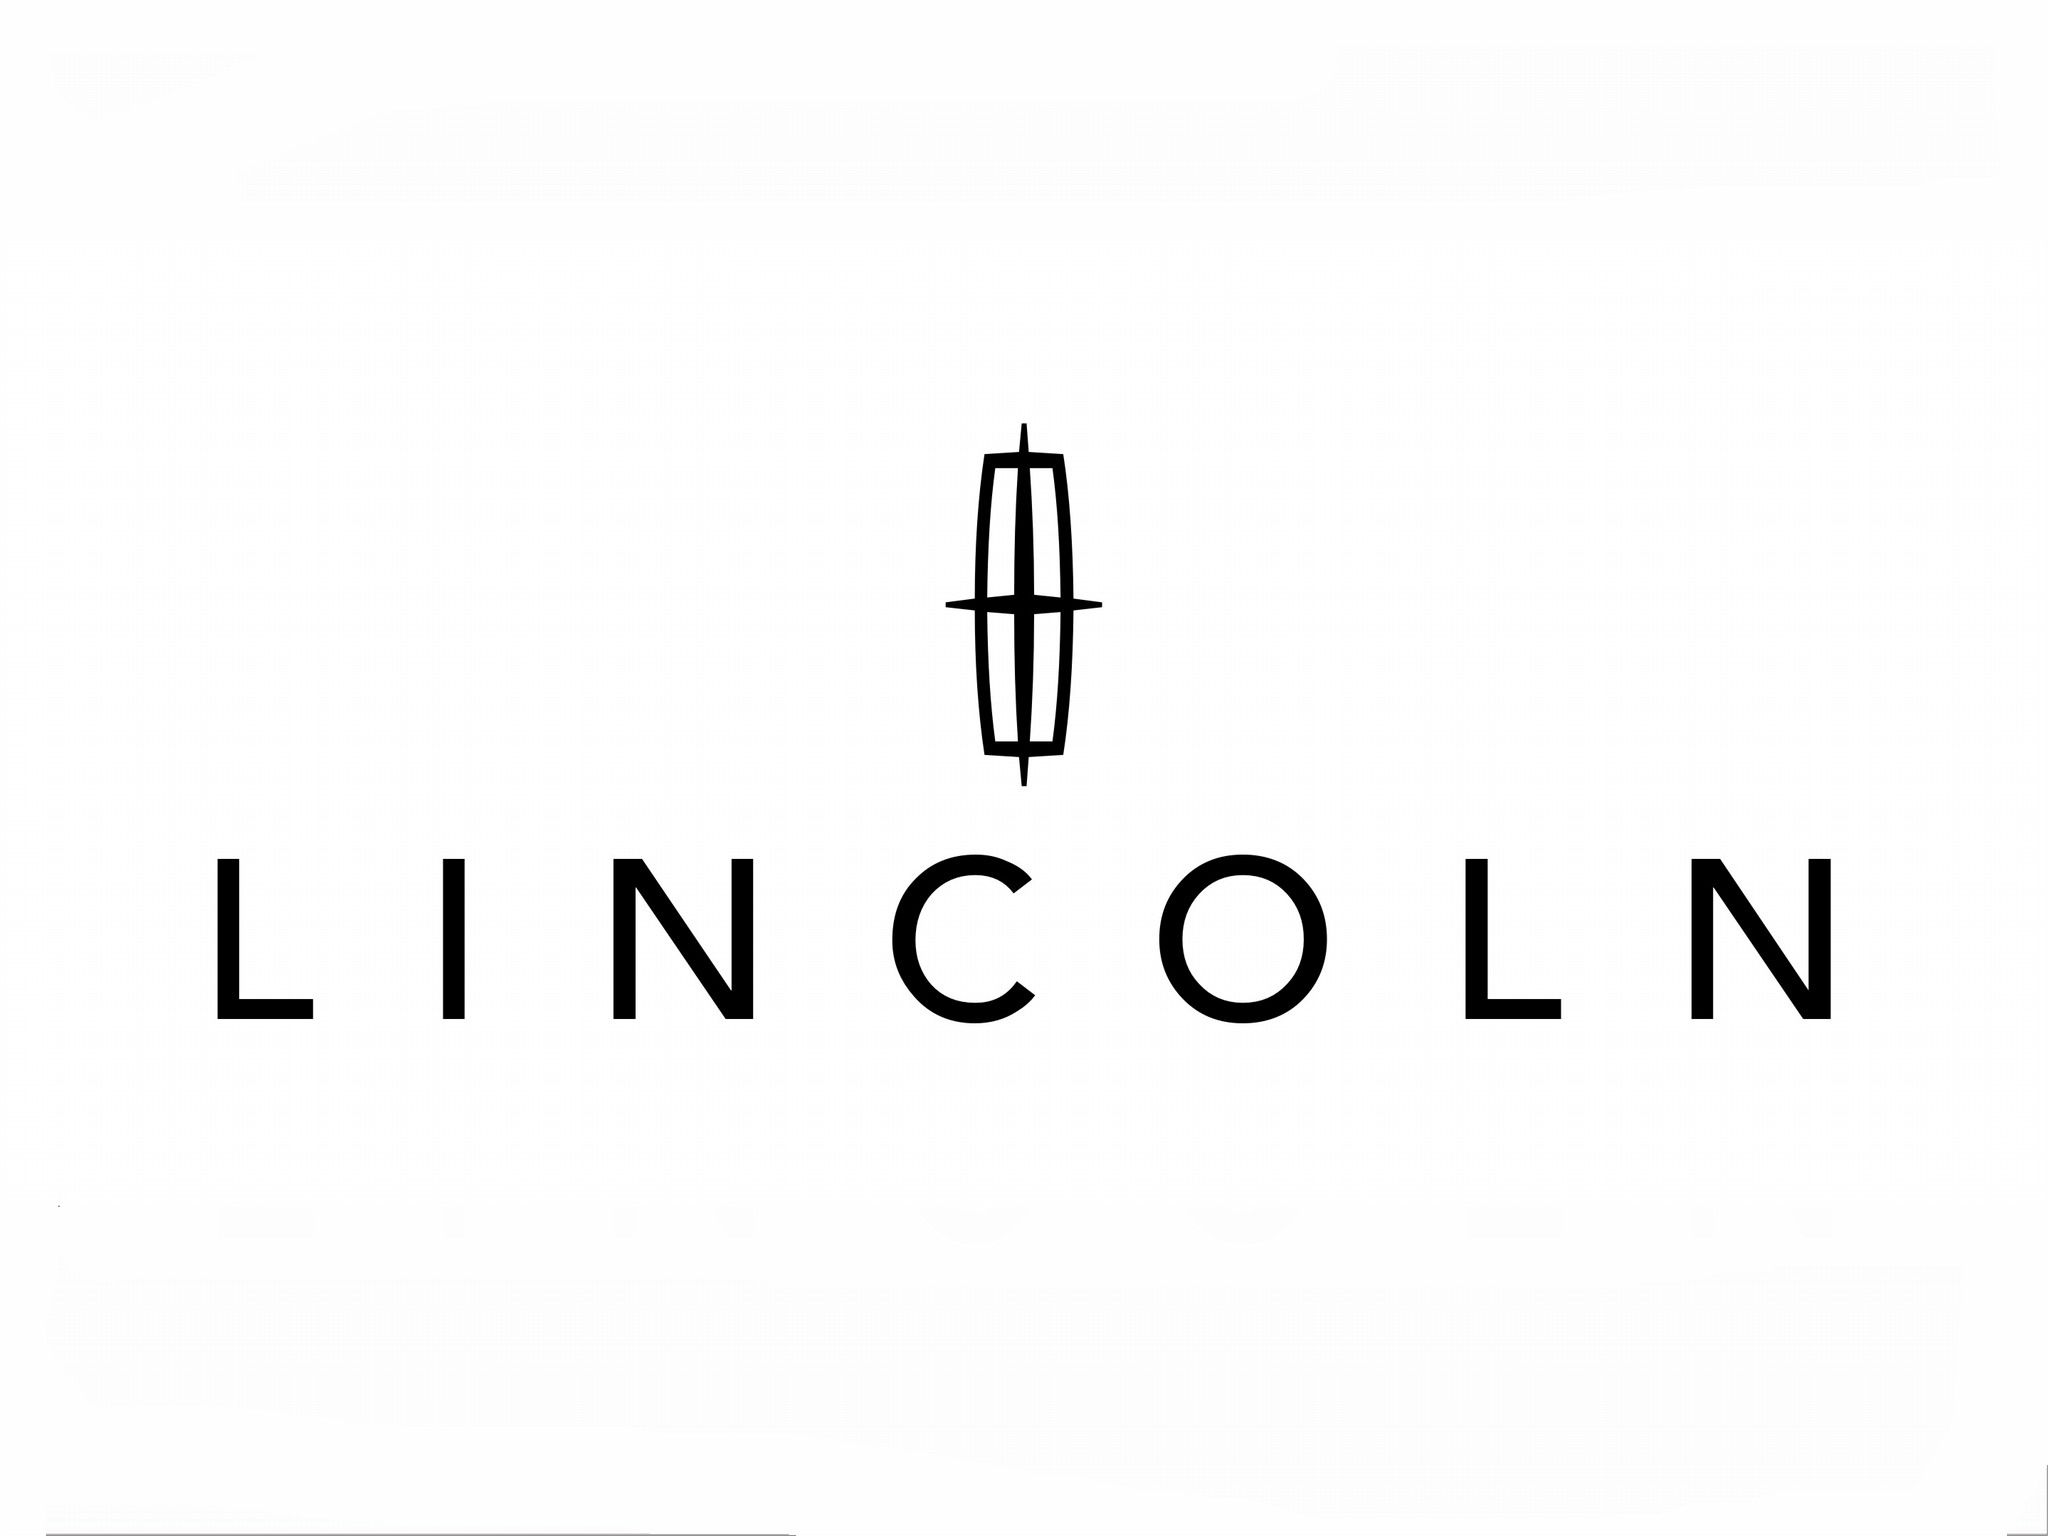 lincoln logo. Lincoln, Lincoln logo, Ford logo